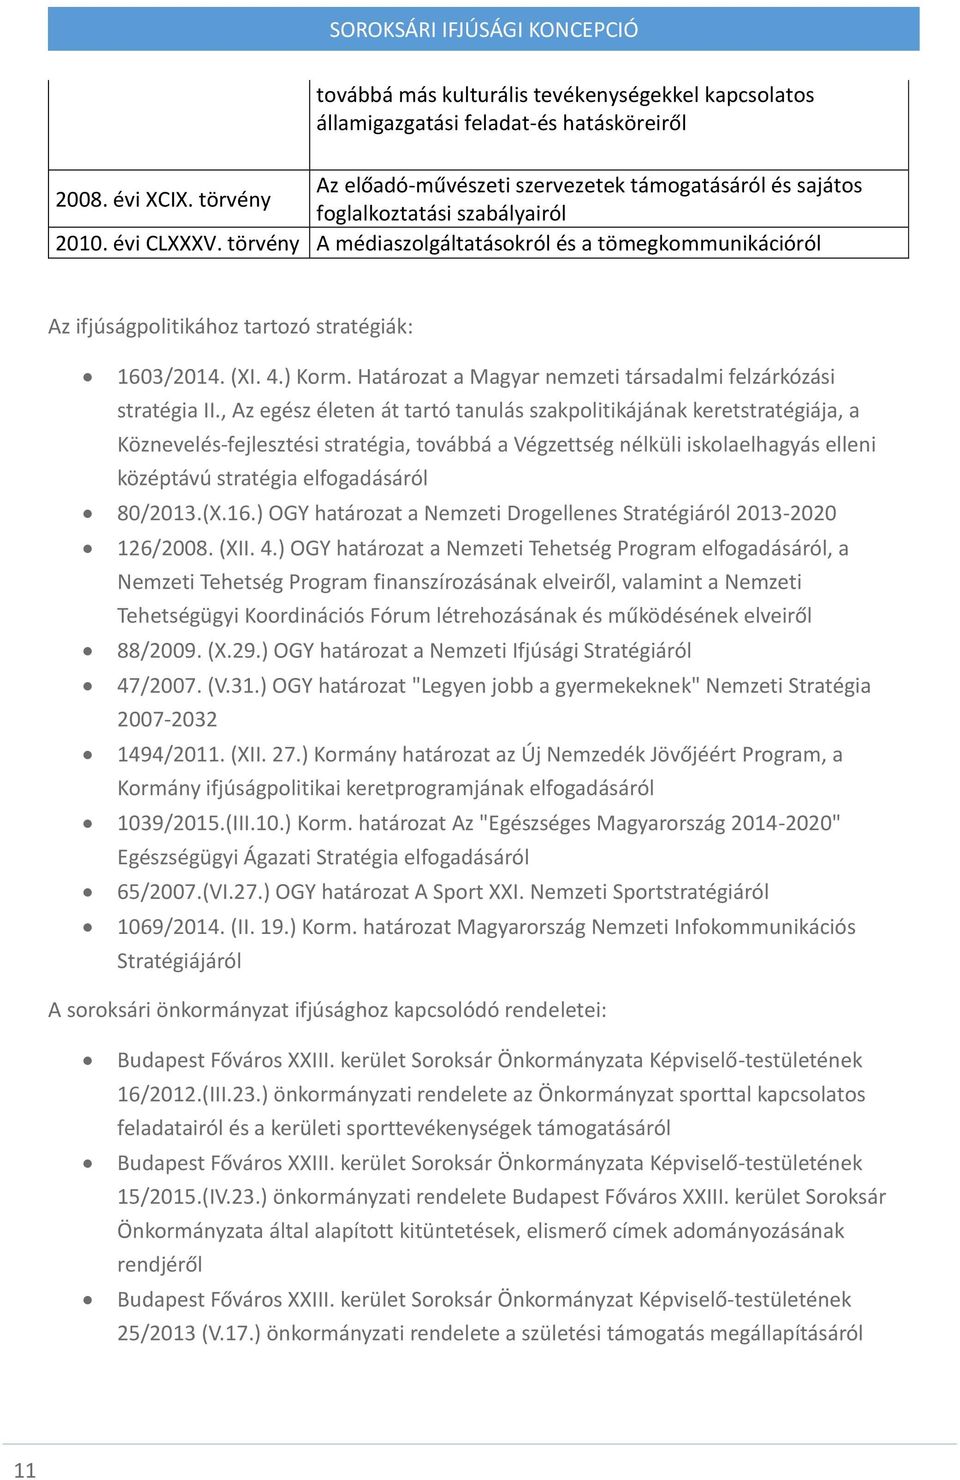 Határozat a Magyar nemzeti társadalmi felzárkózási stratégia II.